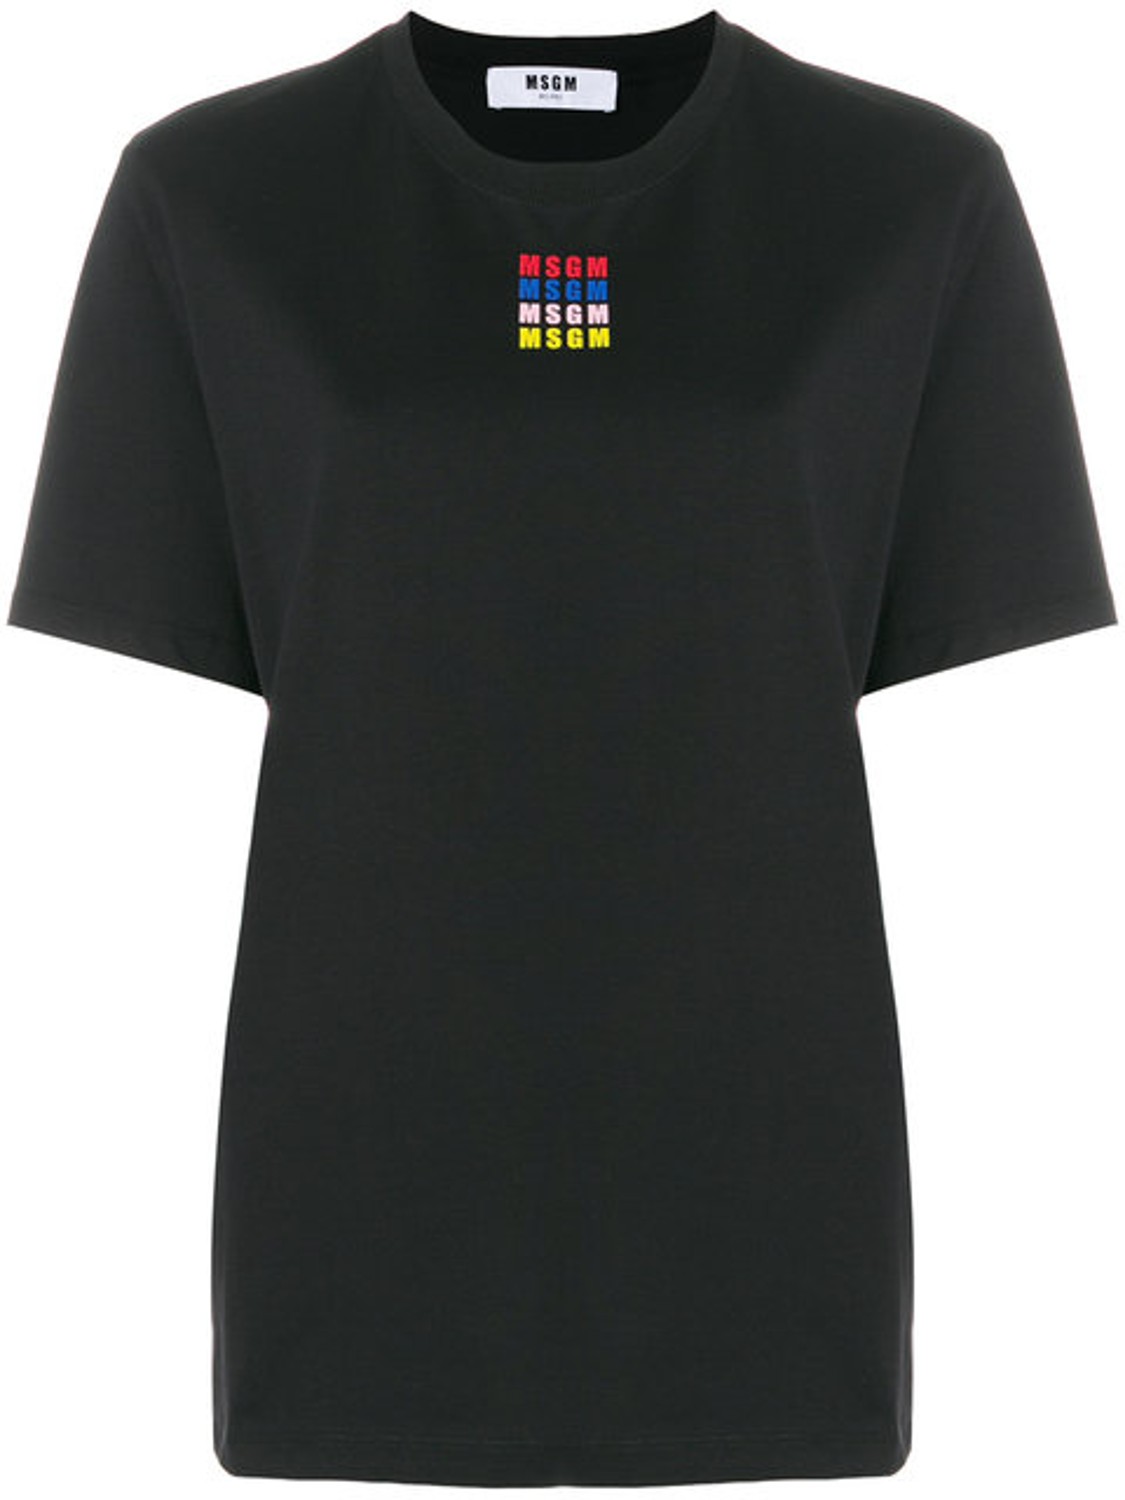 shop MSGM Saldi T-shirts: T-shirt MSGM, nera, girocollo, logo in tre colori diversi sul davanti.

Composizione: 100% cotone. number 1265